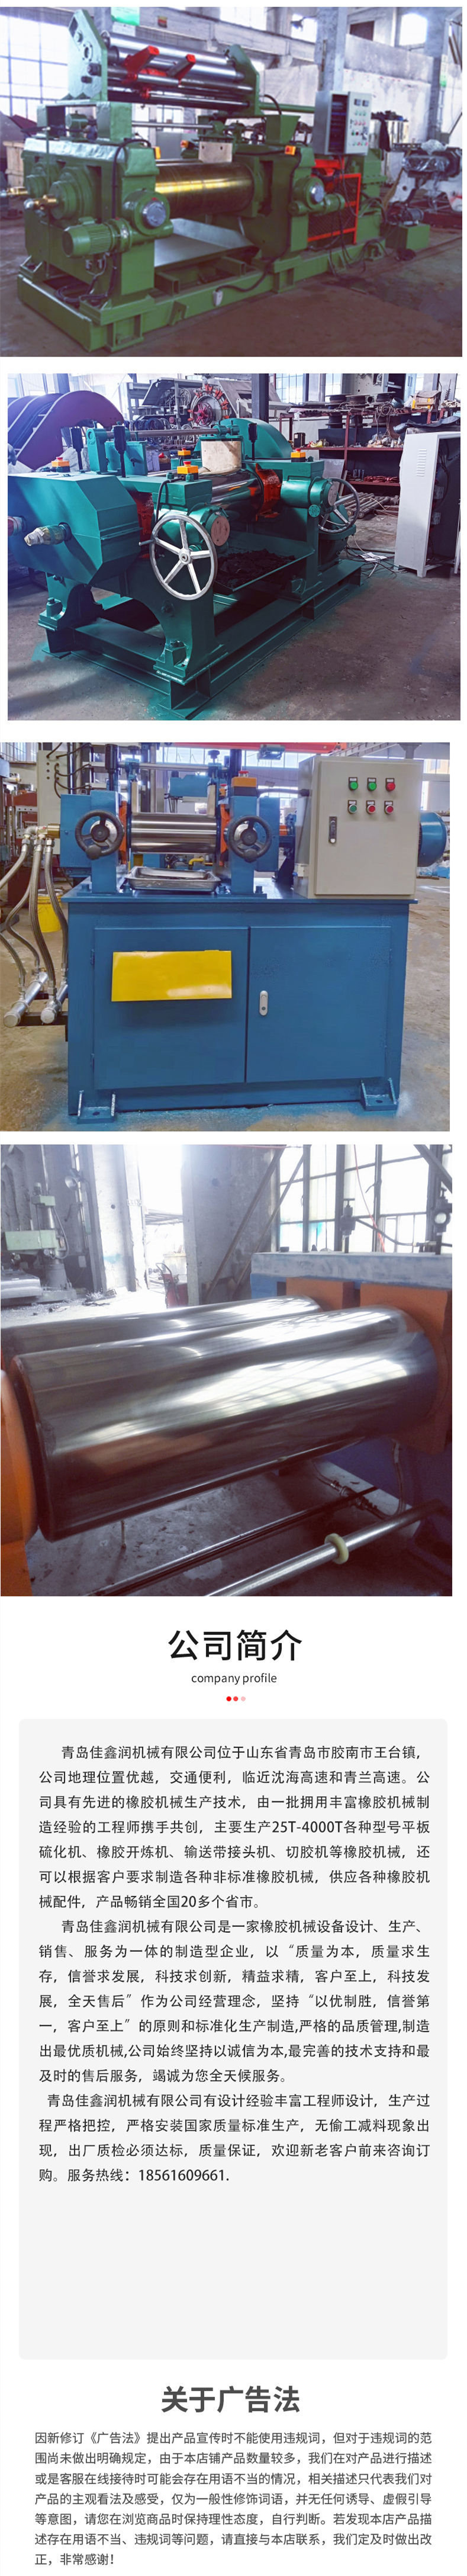 Jiaxin Run 18 inch Bearing Thin Oil Lubrication Open Rubber Refining Machine - Double Roller Rubber Refining Machine